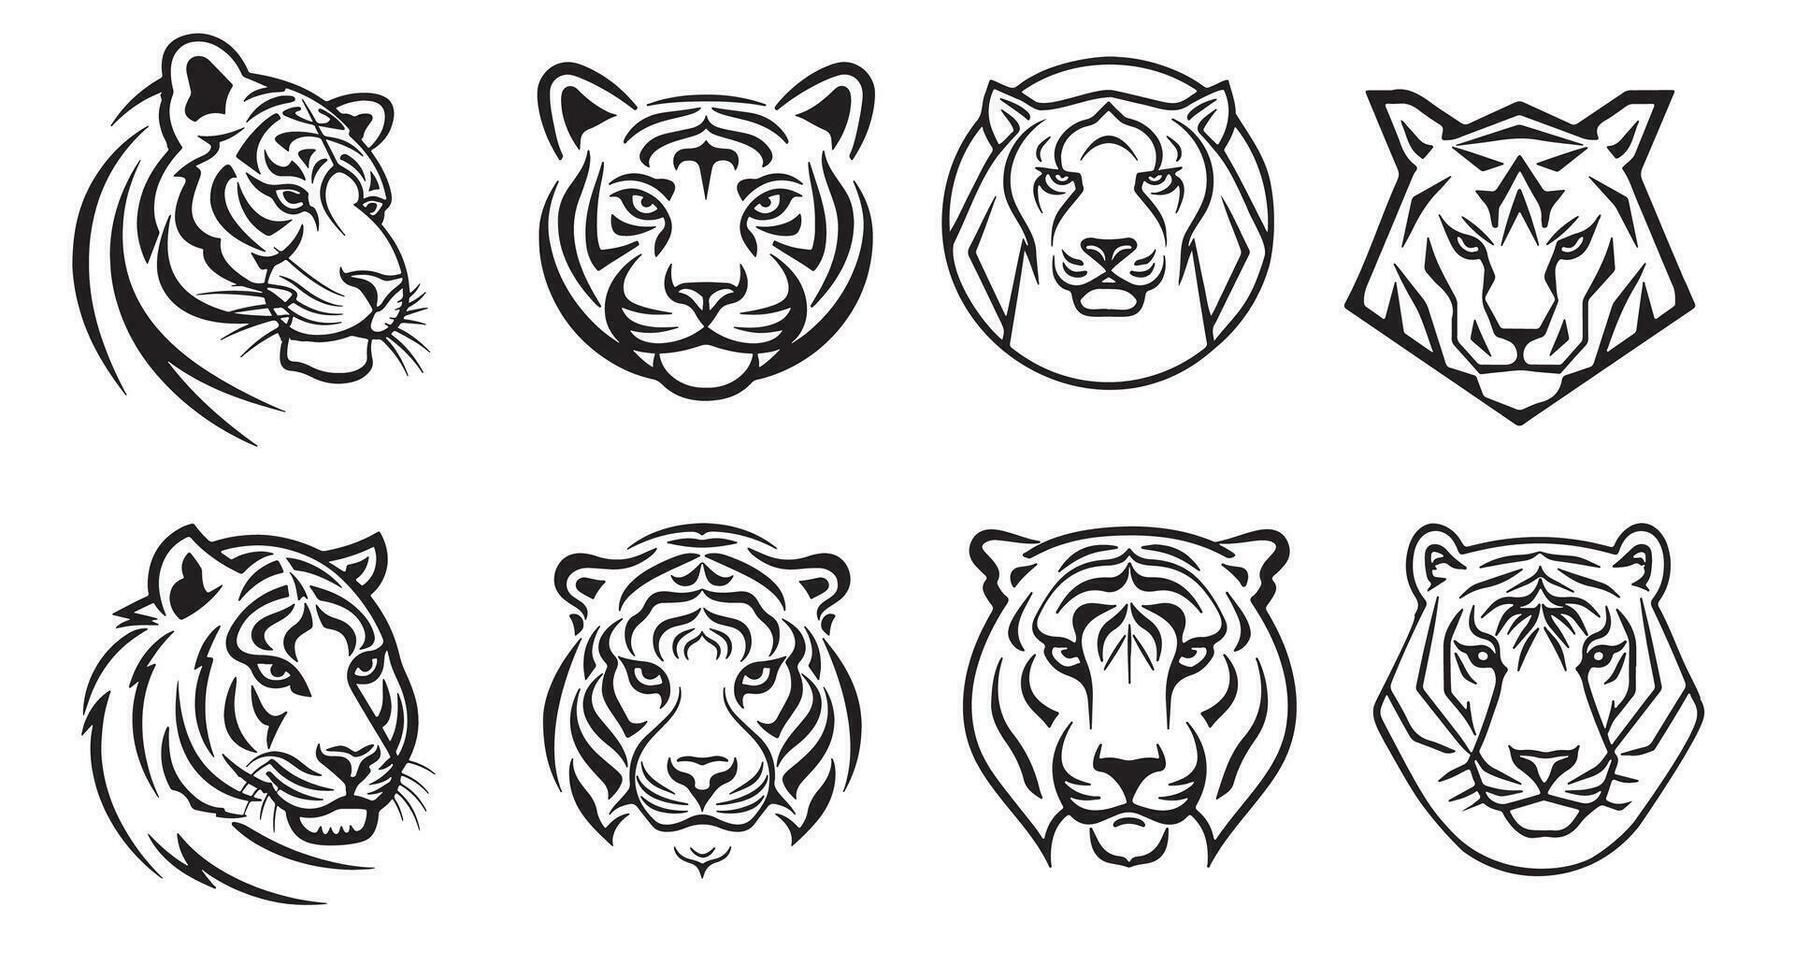 Tigre cabeza colección logo bosquejo mano dibujado en garabatear estilo vector ilustración